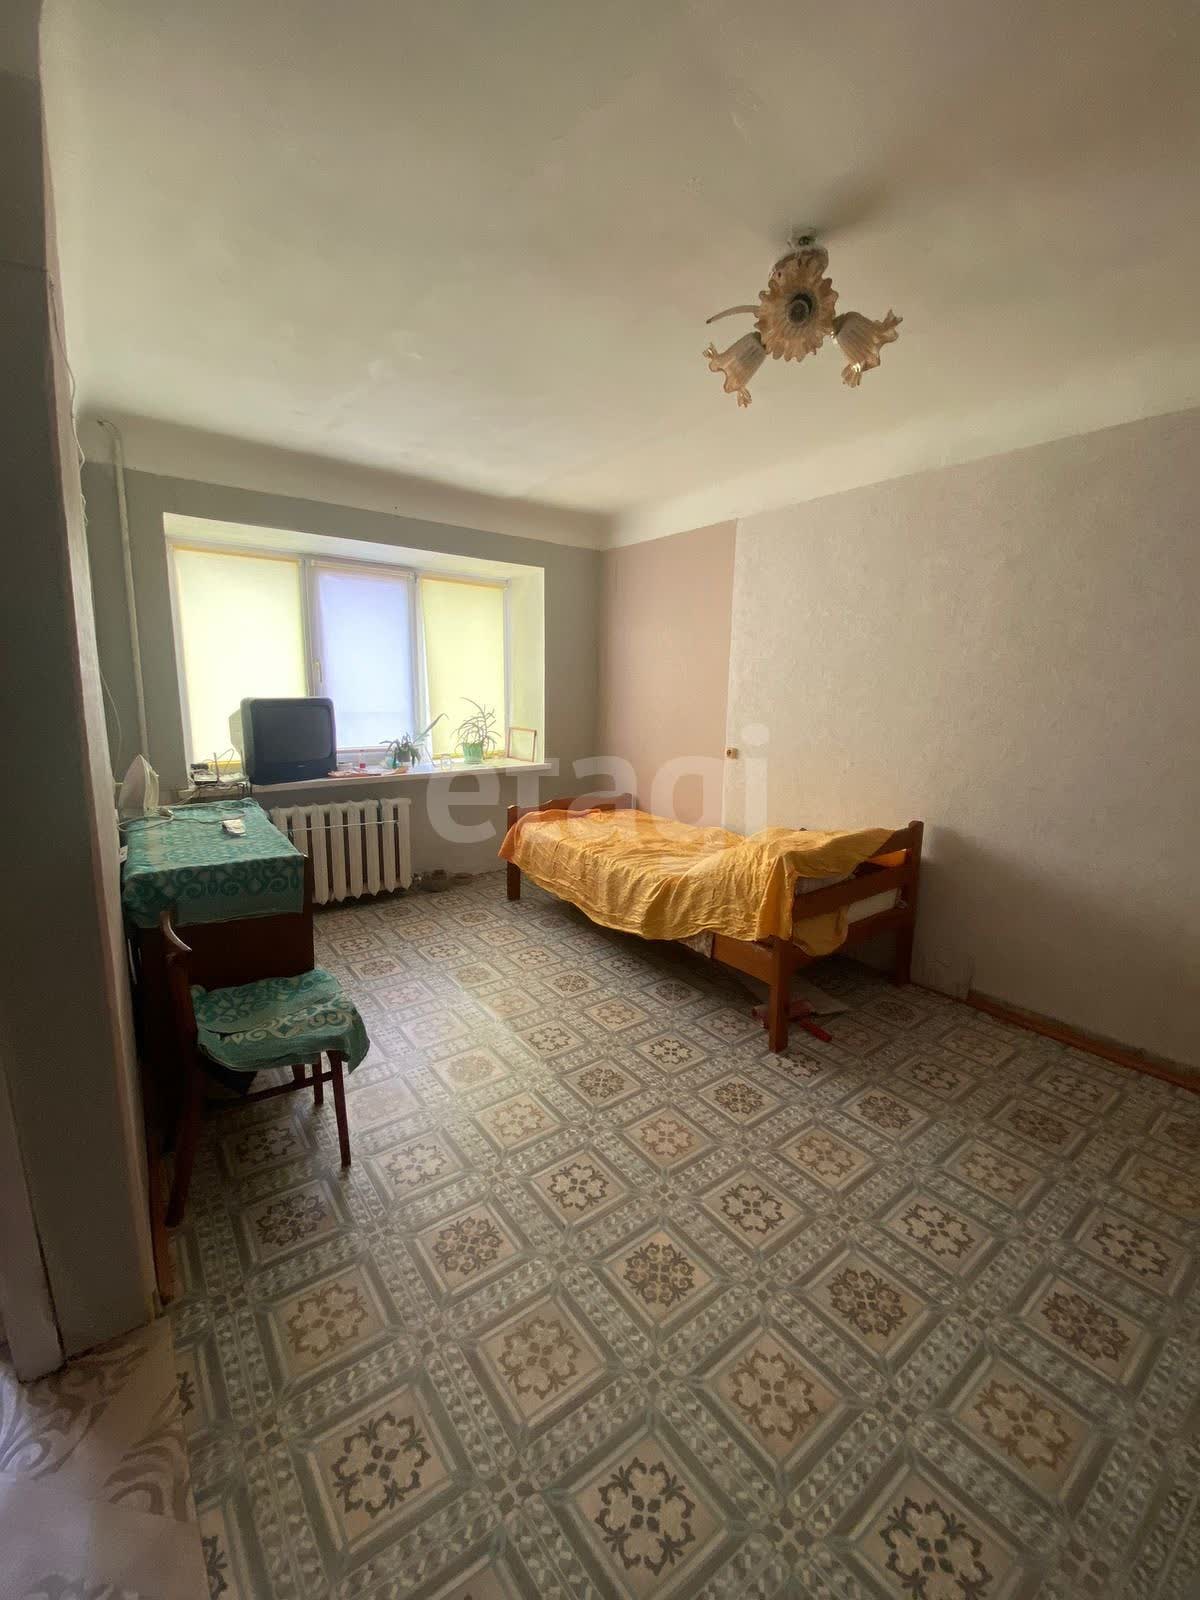 Продажа 1-комнатной квартиры, Комсомольск-на-Амуре, Севастопольская,  54